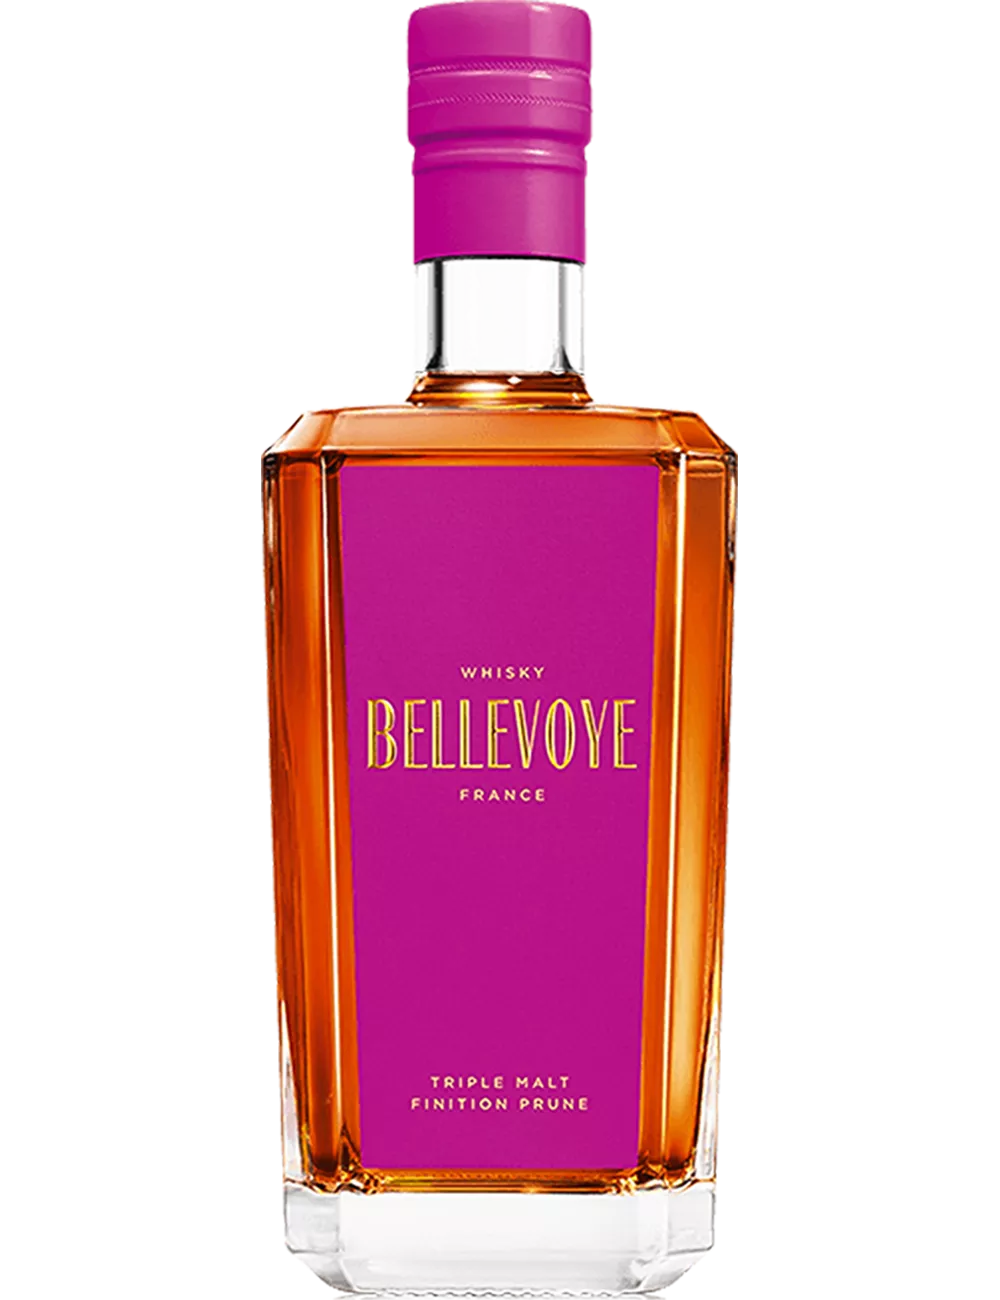 Bellevoye Prune - Blended Malt